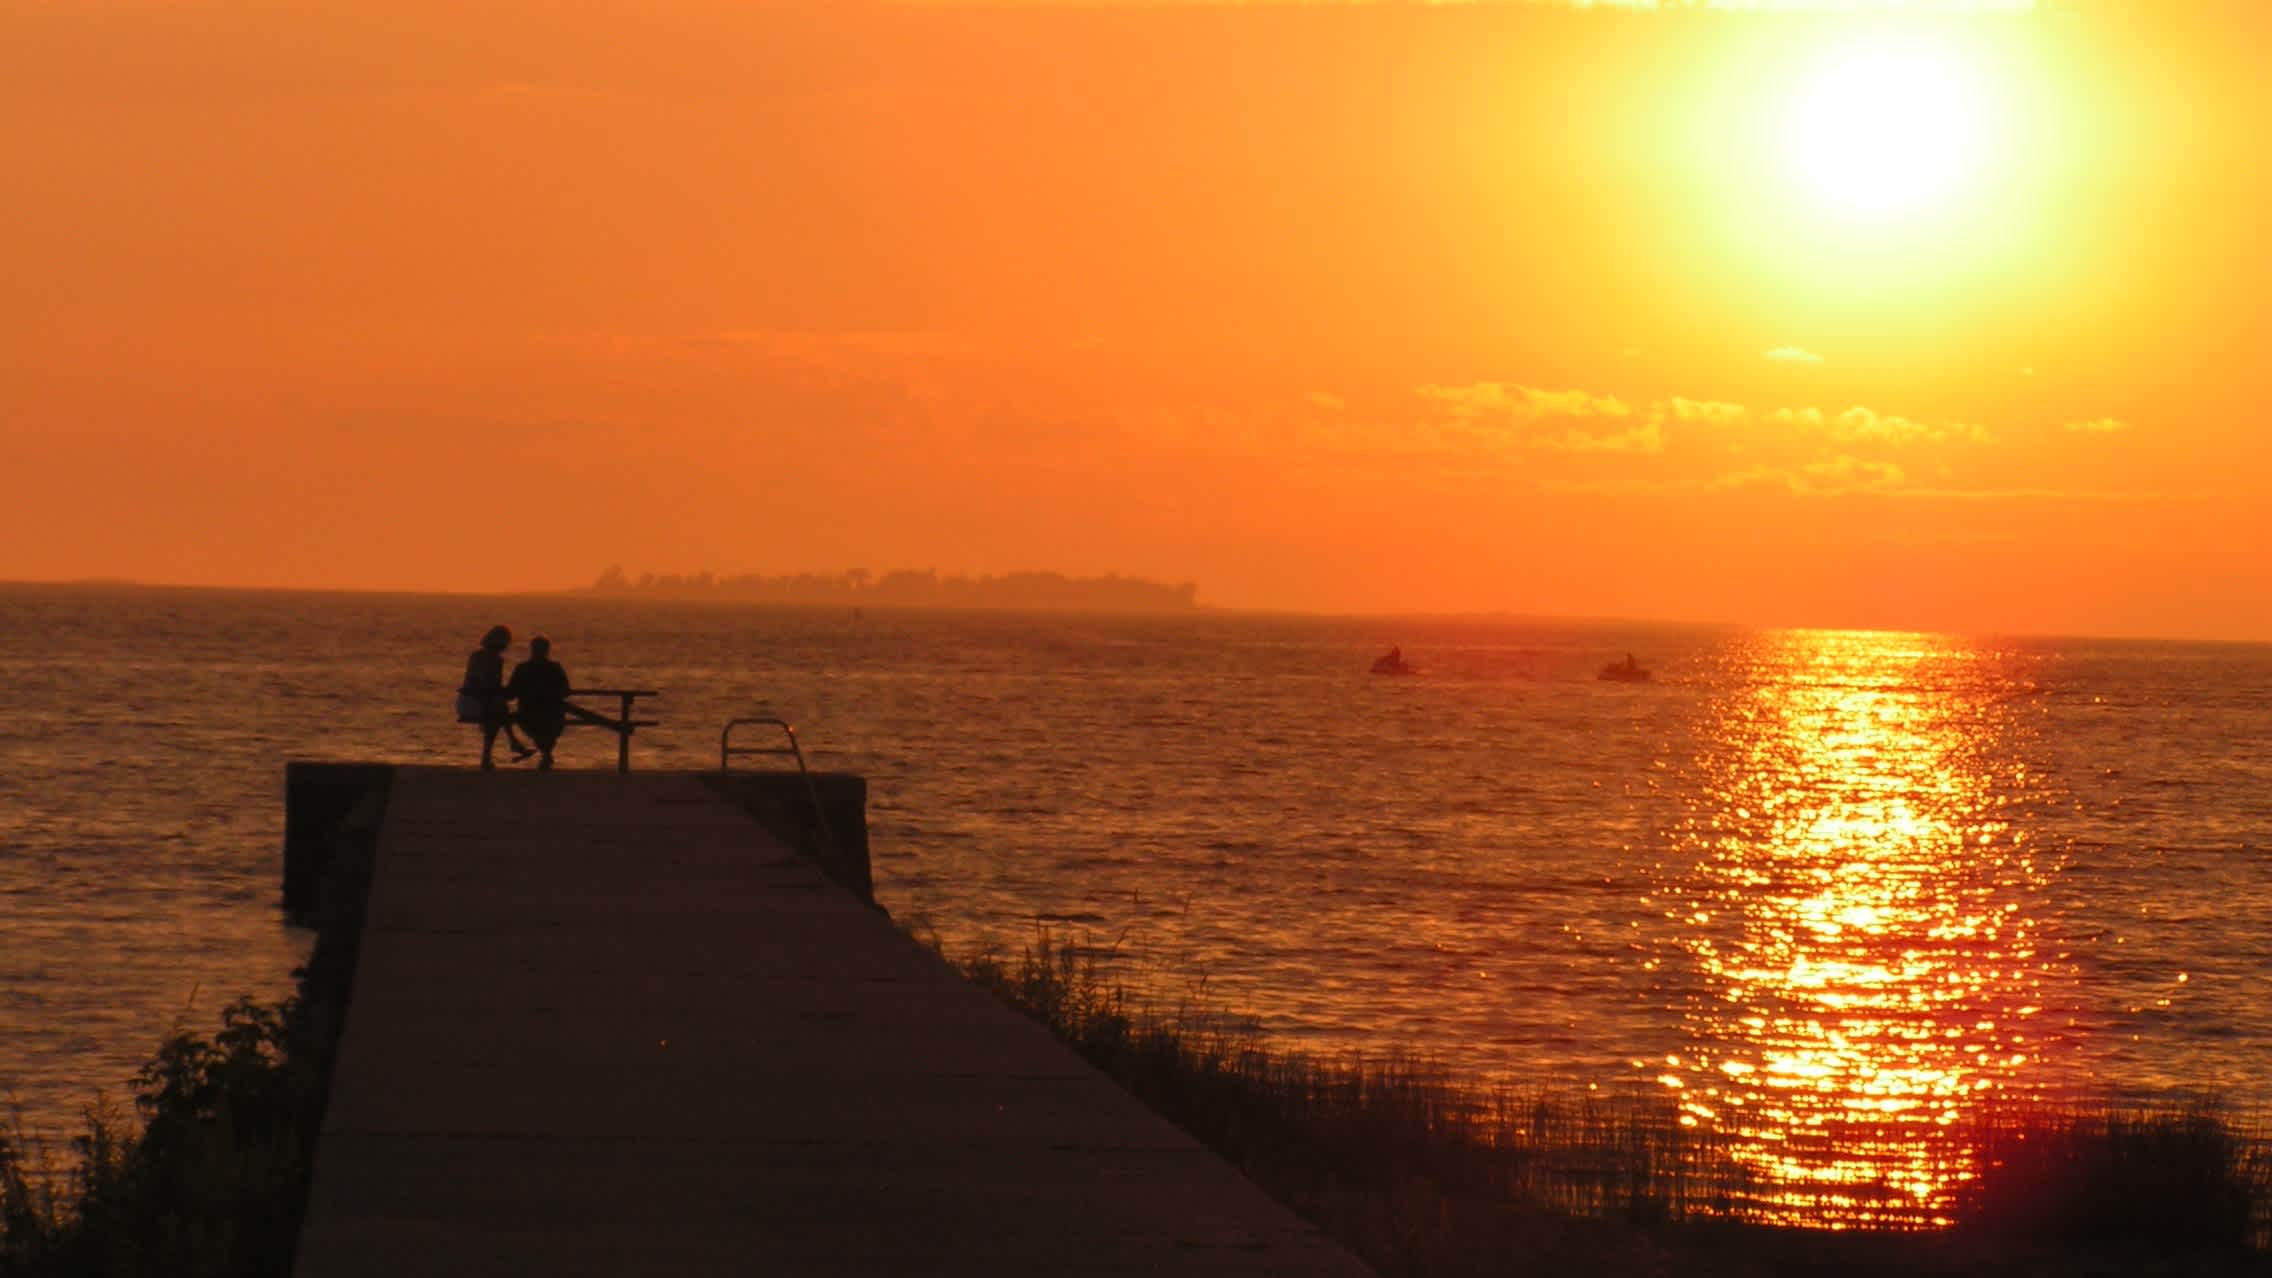 Blick auf einen Steg mit zwei Menschen darauf am Strand Sauble Beach in Ontario, Kanada bei herrlichem Sonnenuntergang.